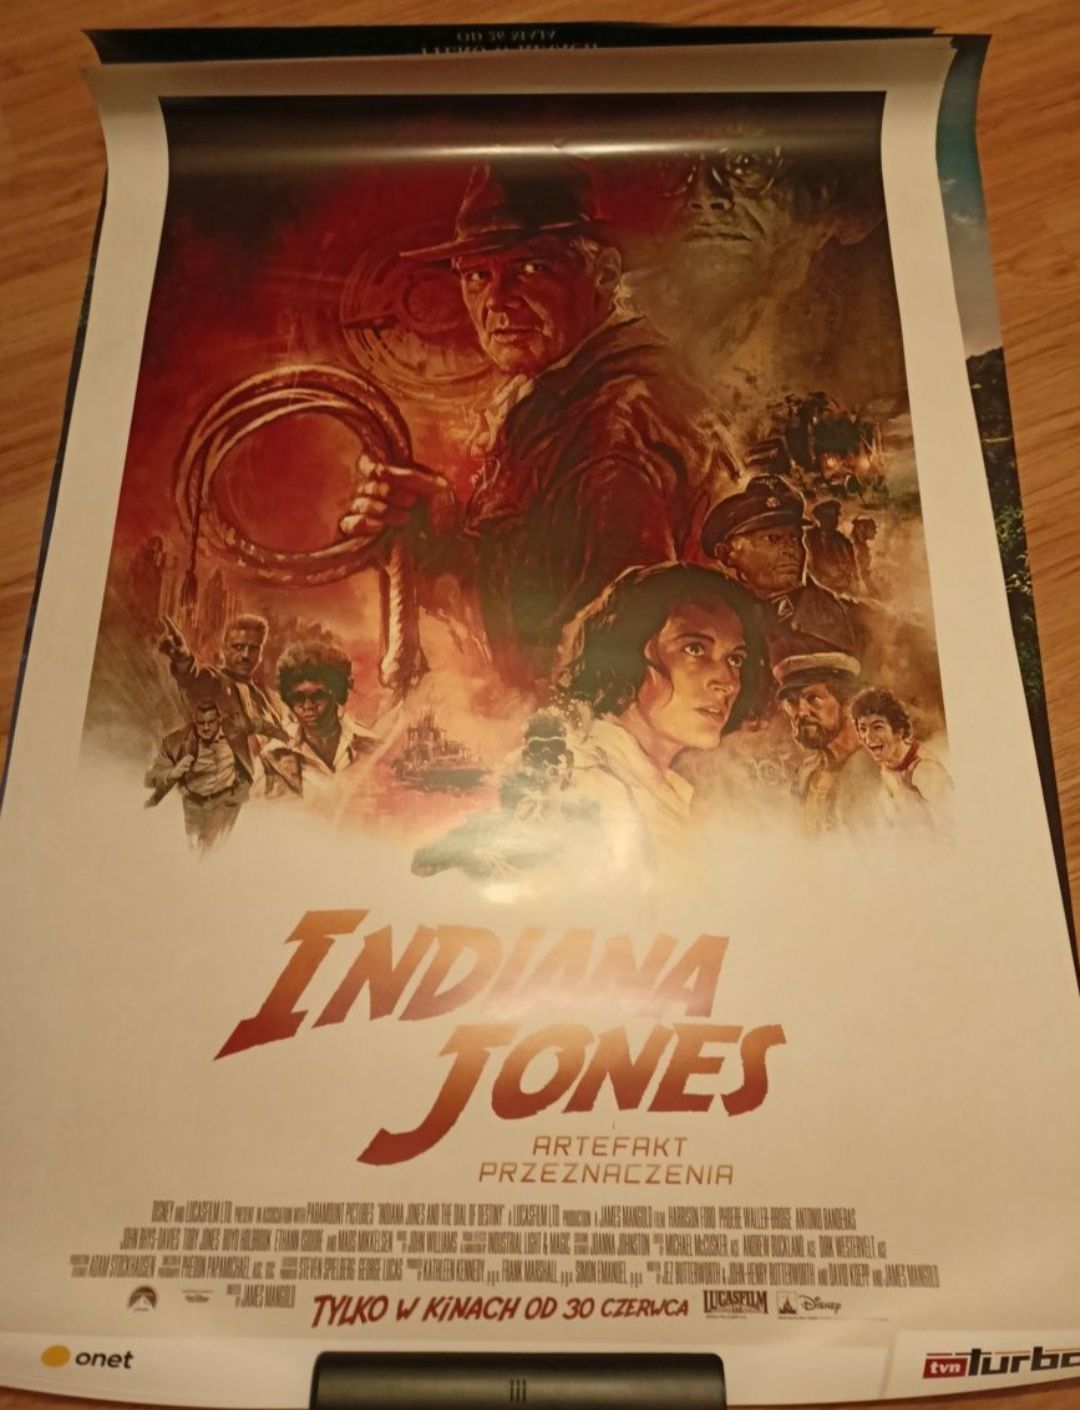 Plakat z filmu Indiana Jones artefakt przeznaczenia